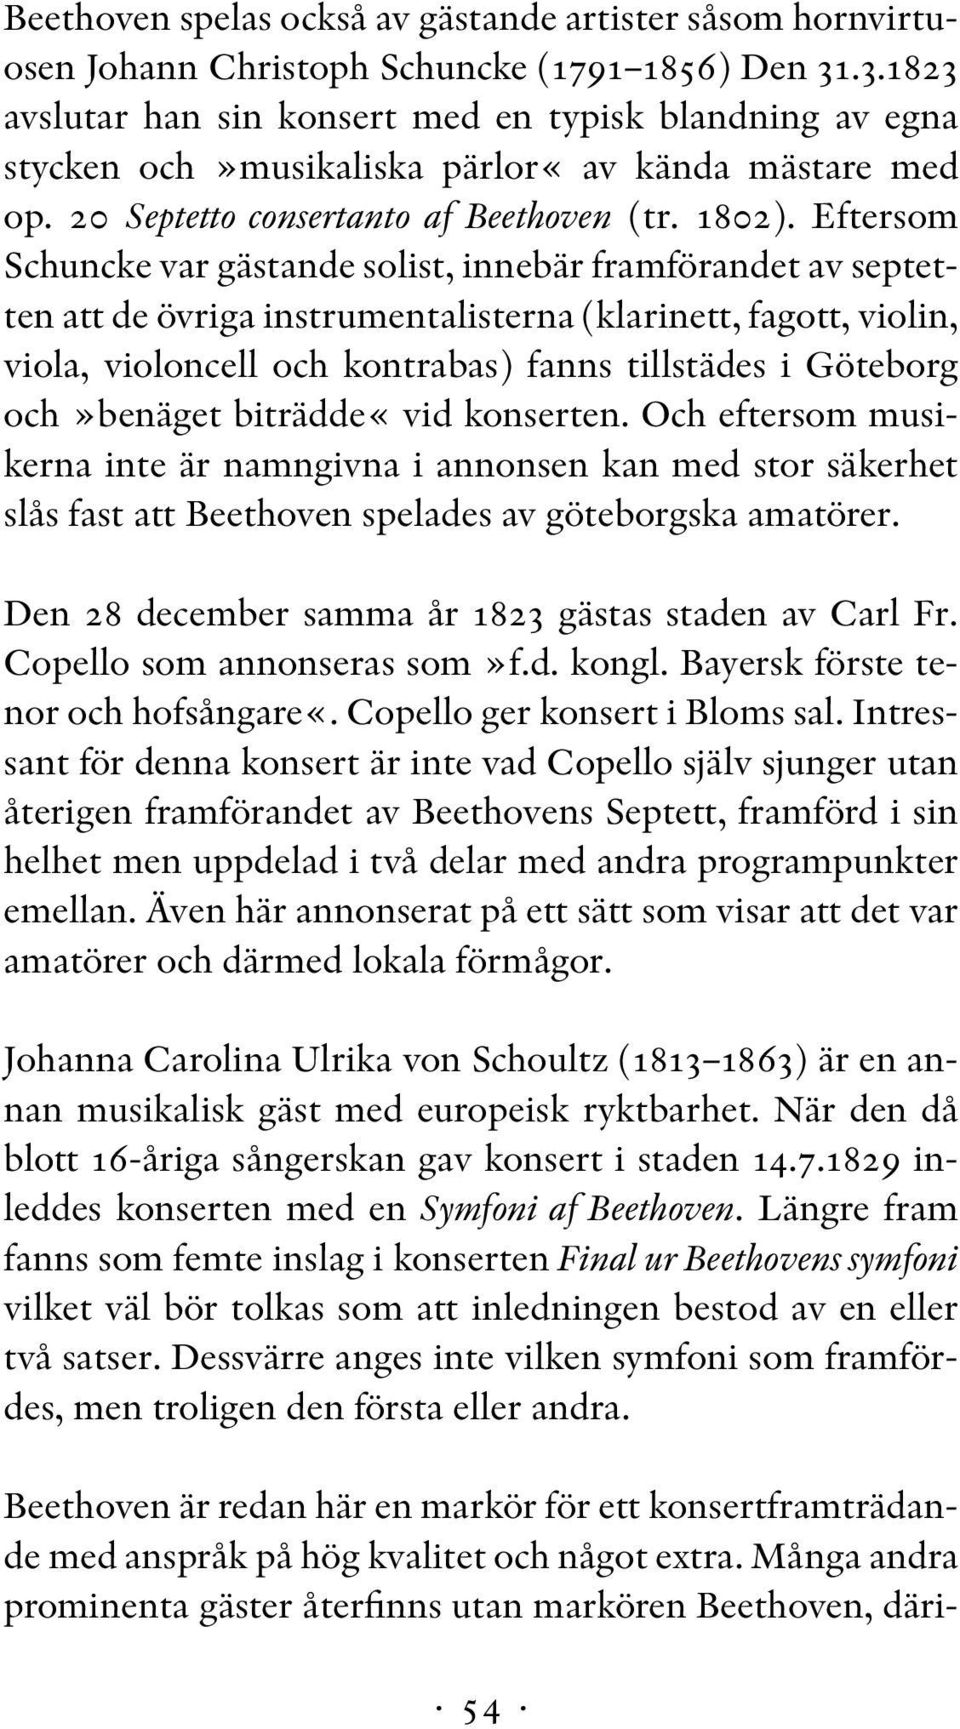 Eftersom Schuncke var gästande solist, innebär framförandet av septetten att de övriga instrumentalisterna (klarinett, fagott, violin, viola, violoncell och kontrabas) fanns tillstädes i Göteborg